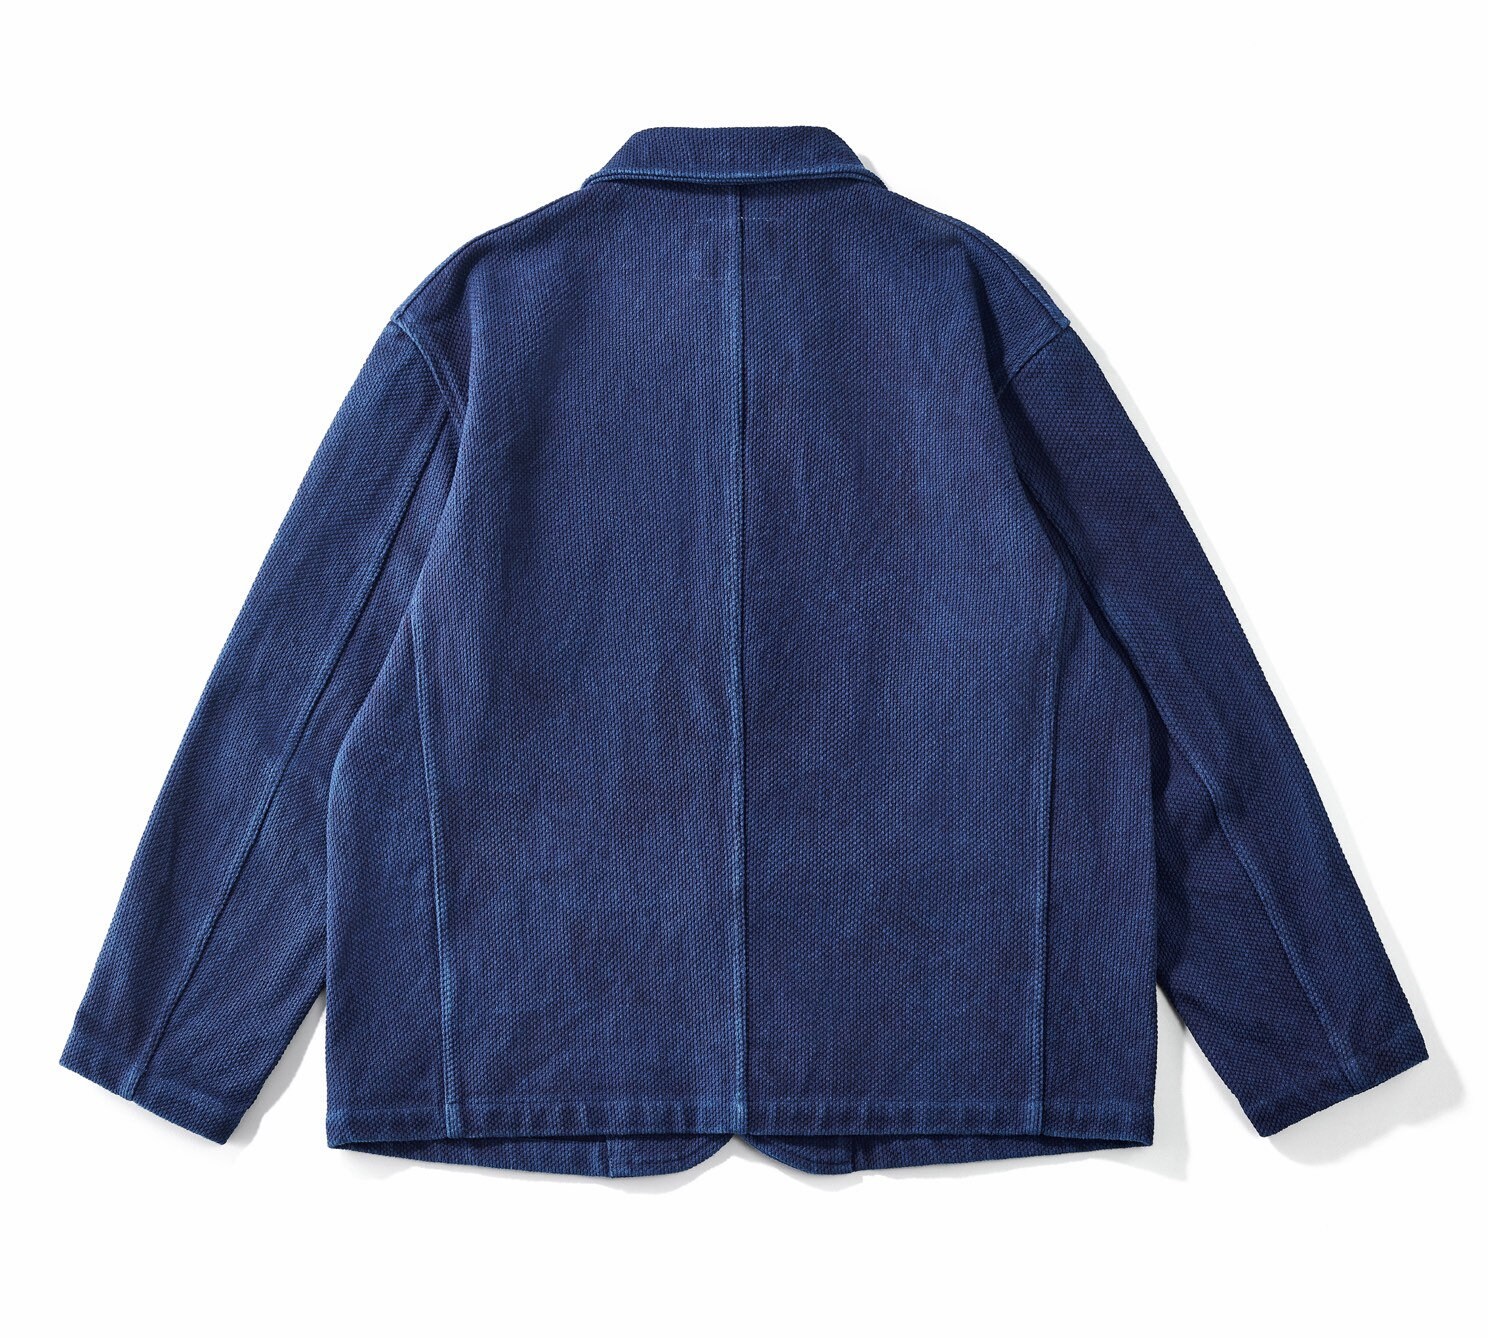 Indigo Blue French Worker Jacket Vintage Cardigan Thin Coat - Etsy